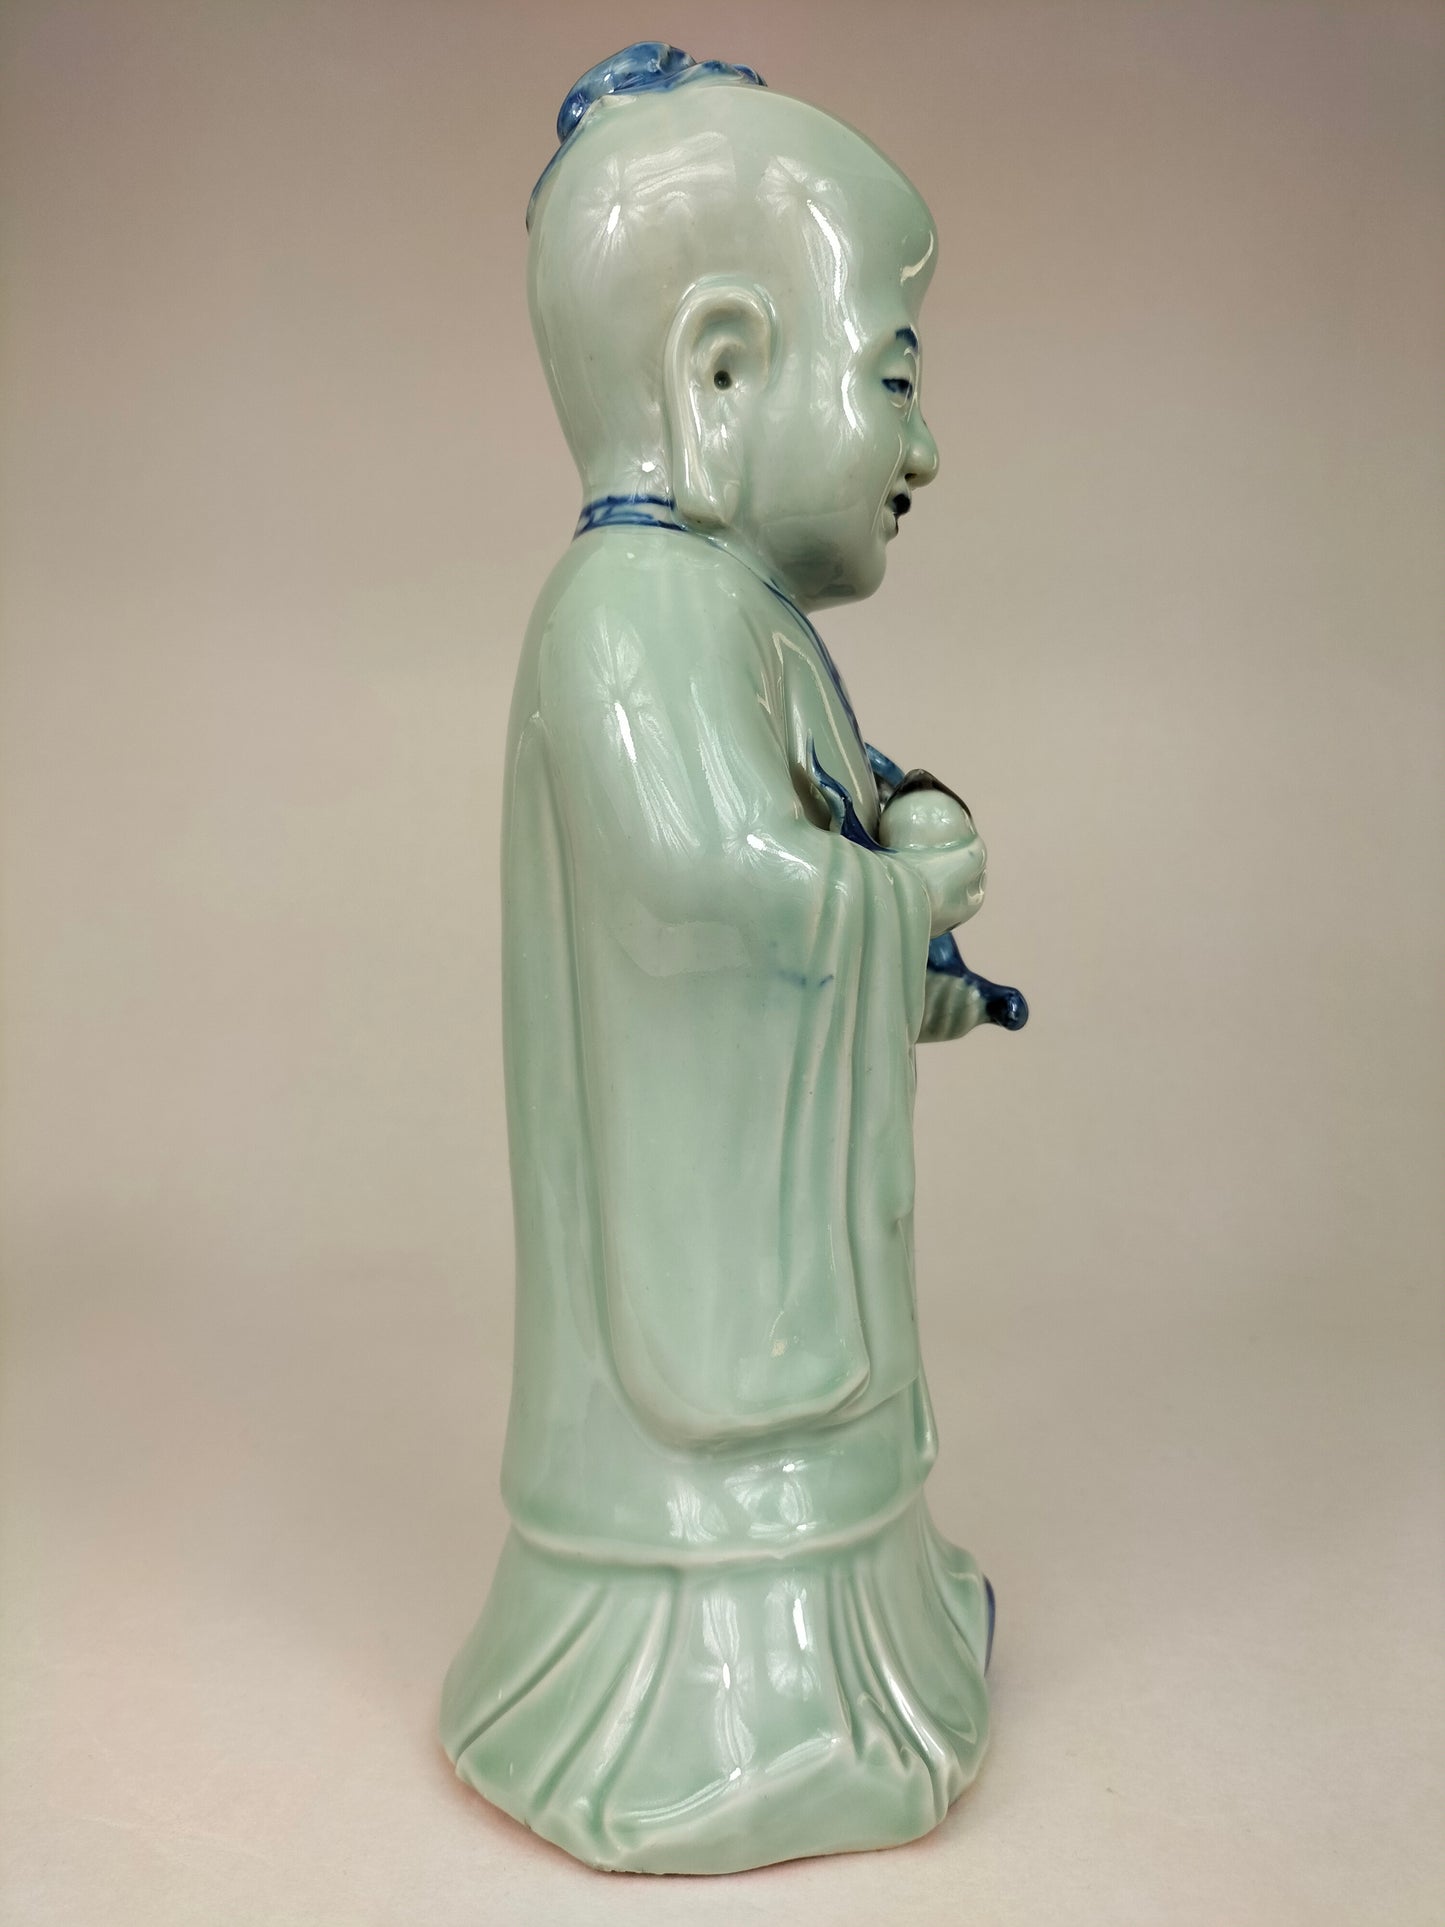 Estátua chinesa de Shou Lao // Deus da sorte e da fortuna - século XX